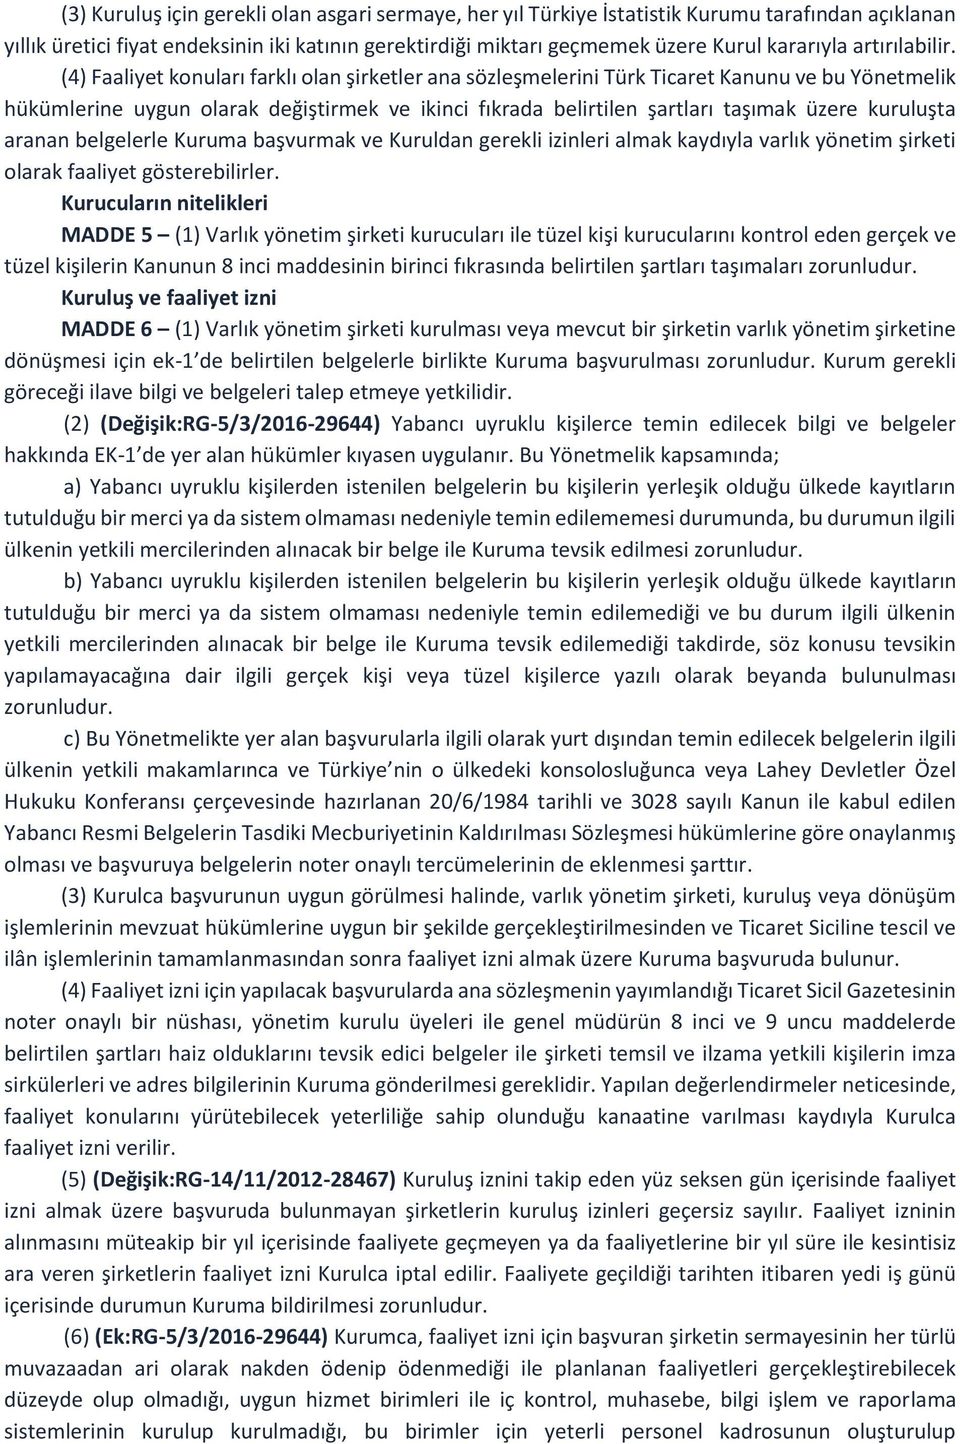 (4) Faaliyet konuları farklı olan şirketler ana sözleşmelerini Türk Ticaret Kanunu ve bu Yönetmelik hükümlerine uygun olarak değiştirmek ve ikinci fıkrada belirtilen şartları taşımak üzere kuruluşta